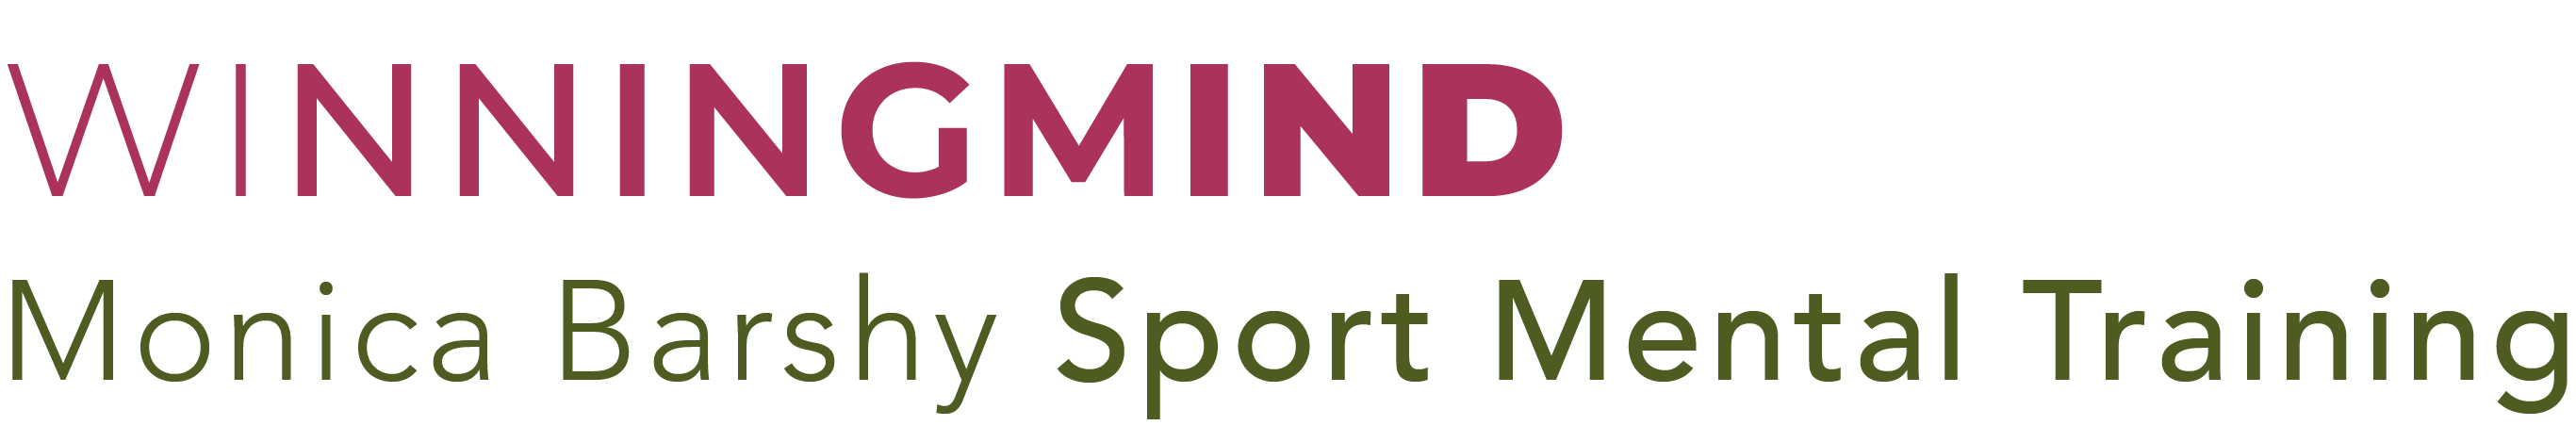 Logo von Winning Mind Sport Mental Training mit Monica Barshy